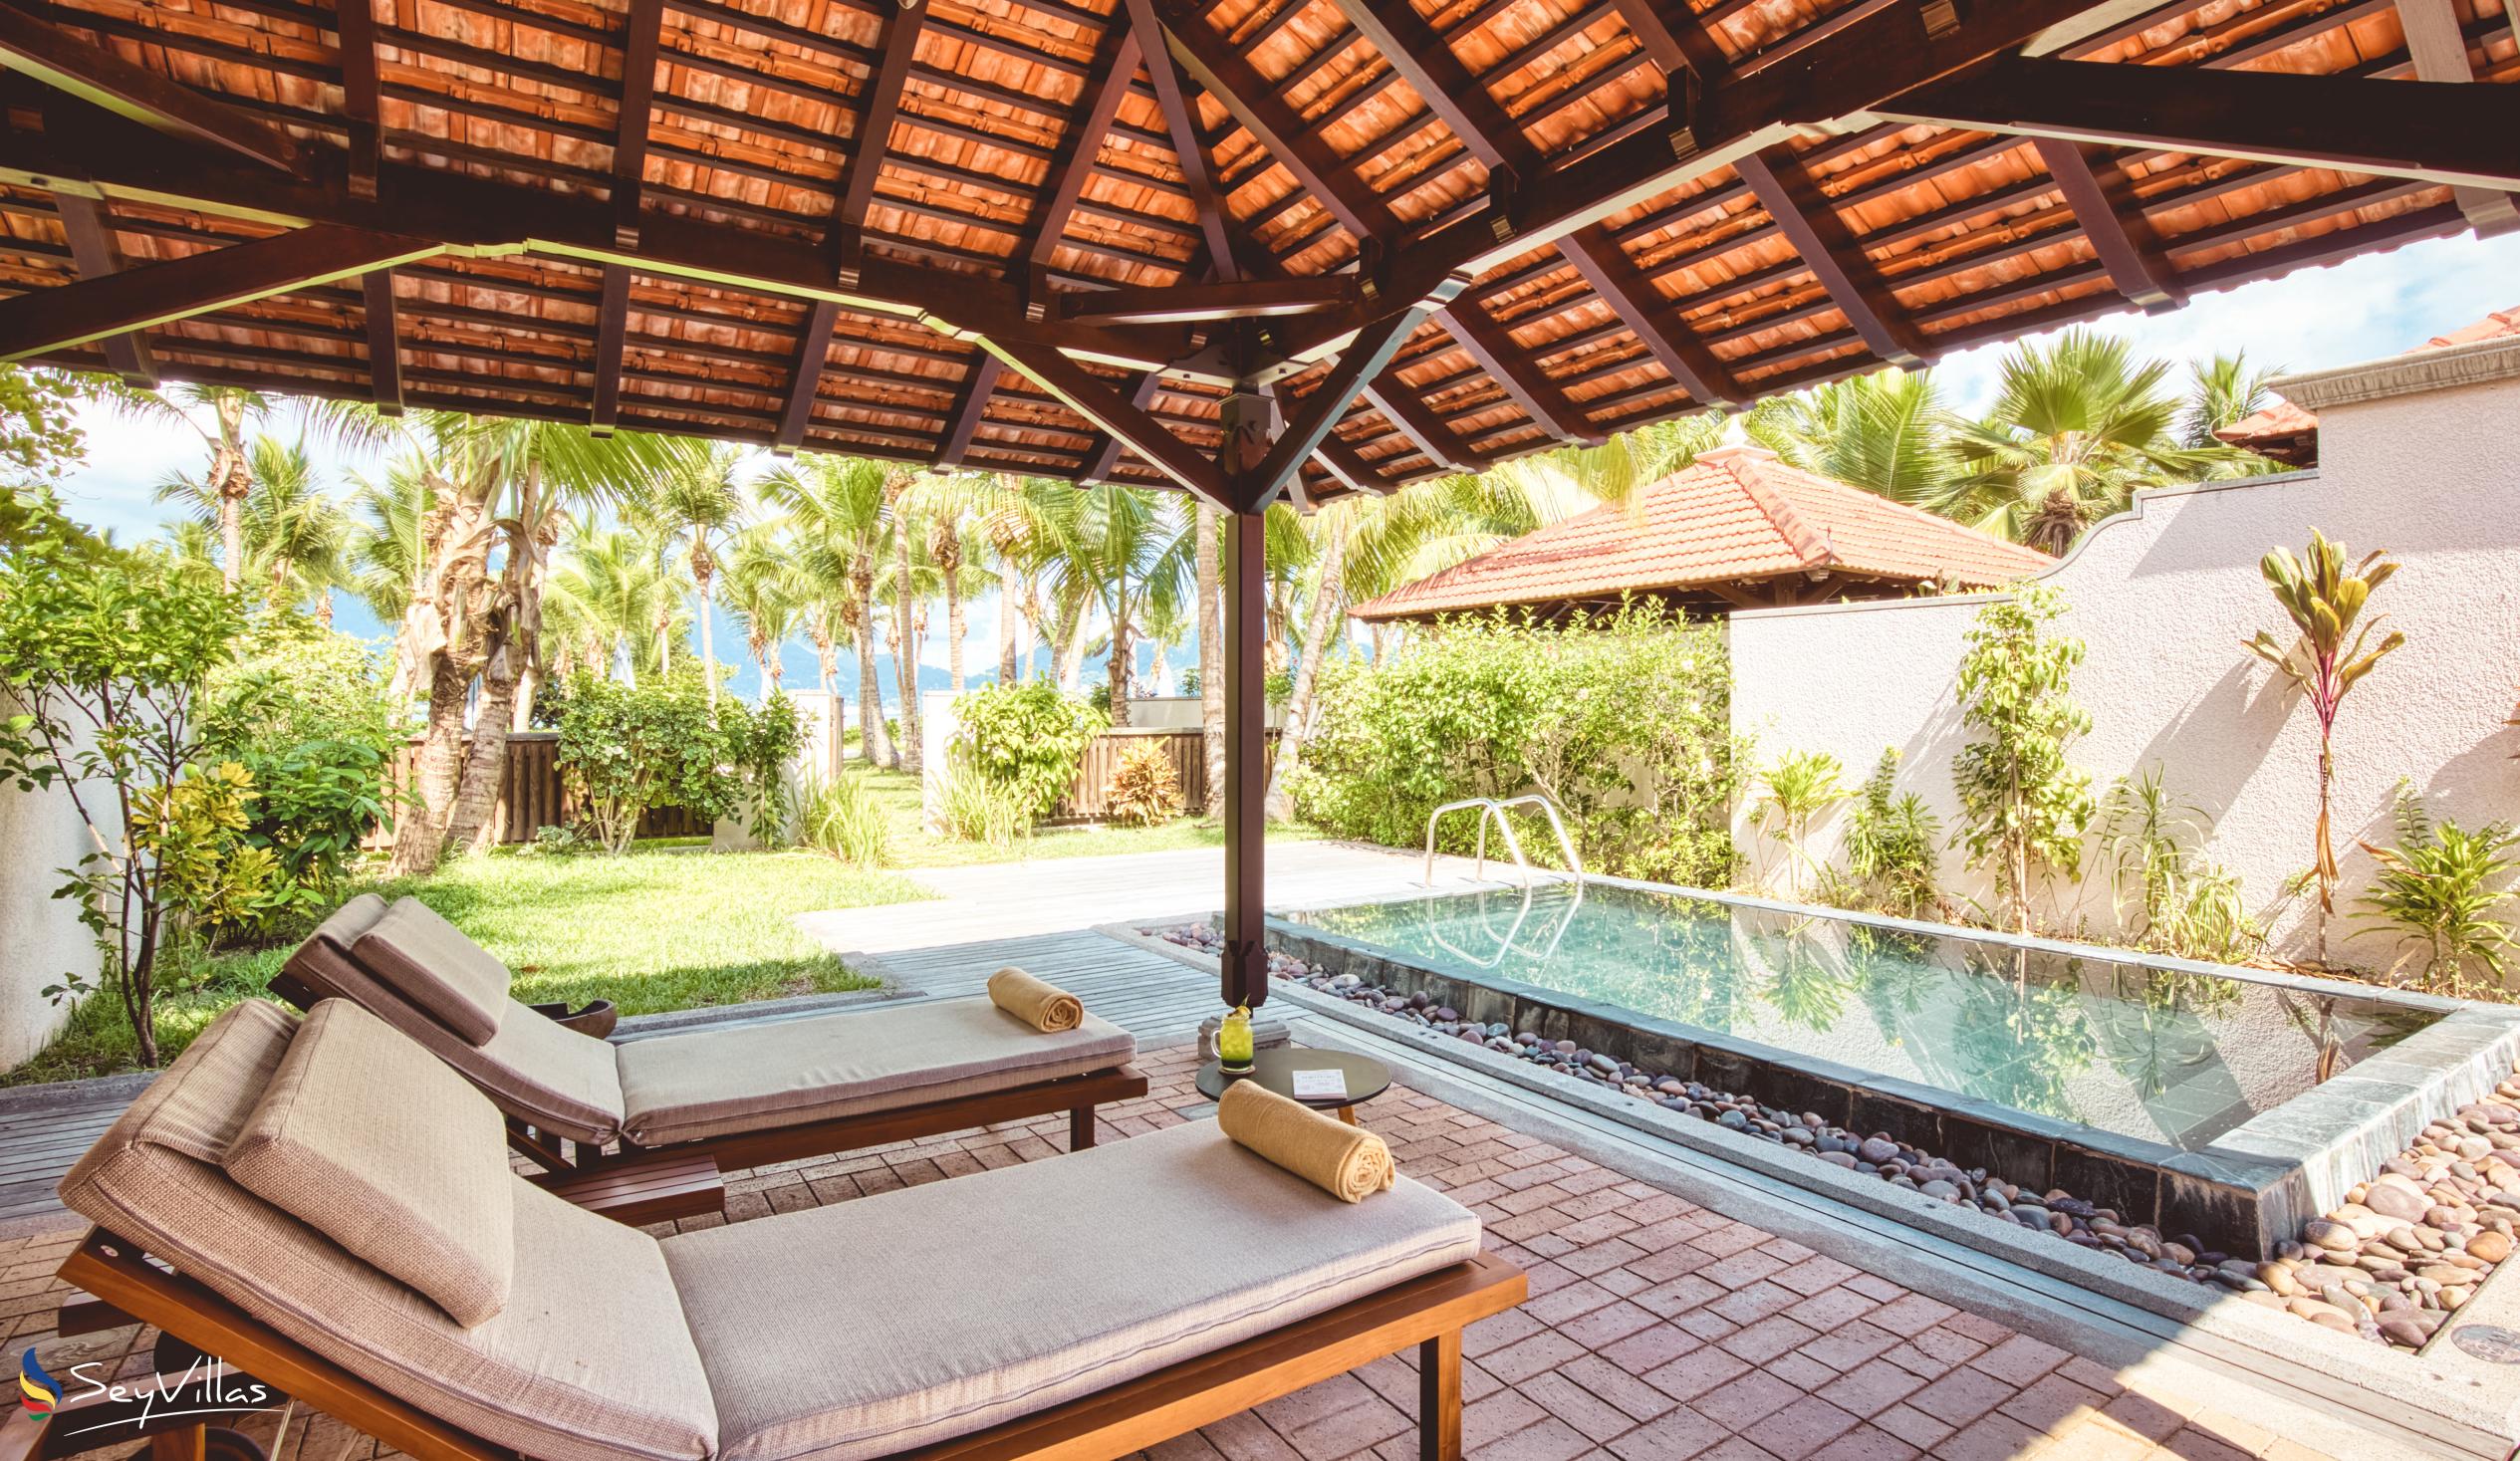 Foto 121: Club Med Seychelles - Junior Suite mit Meerblick und privatem Pool - Saint Anne (Seychellen)